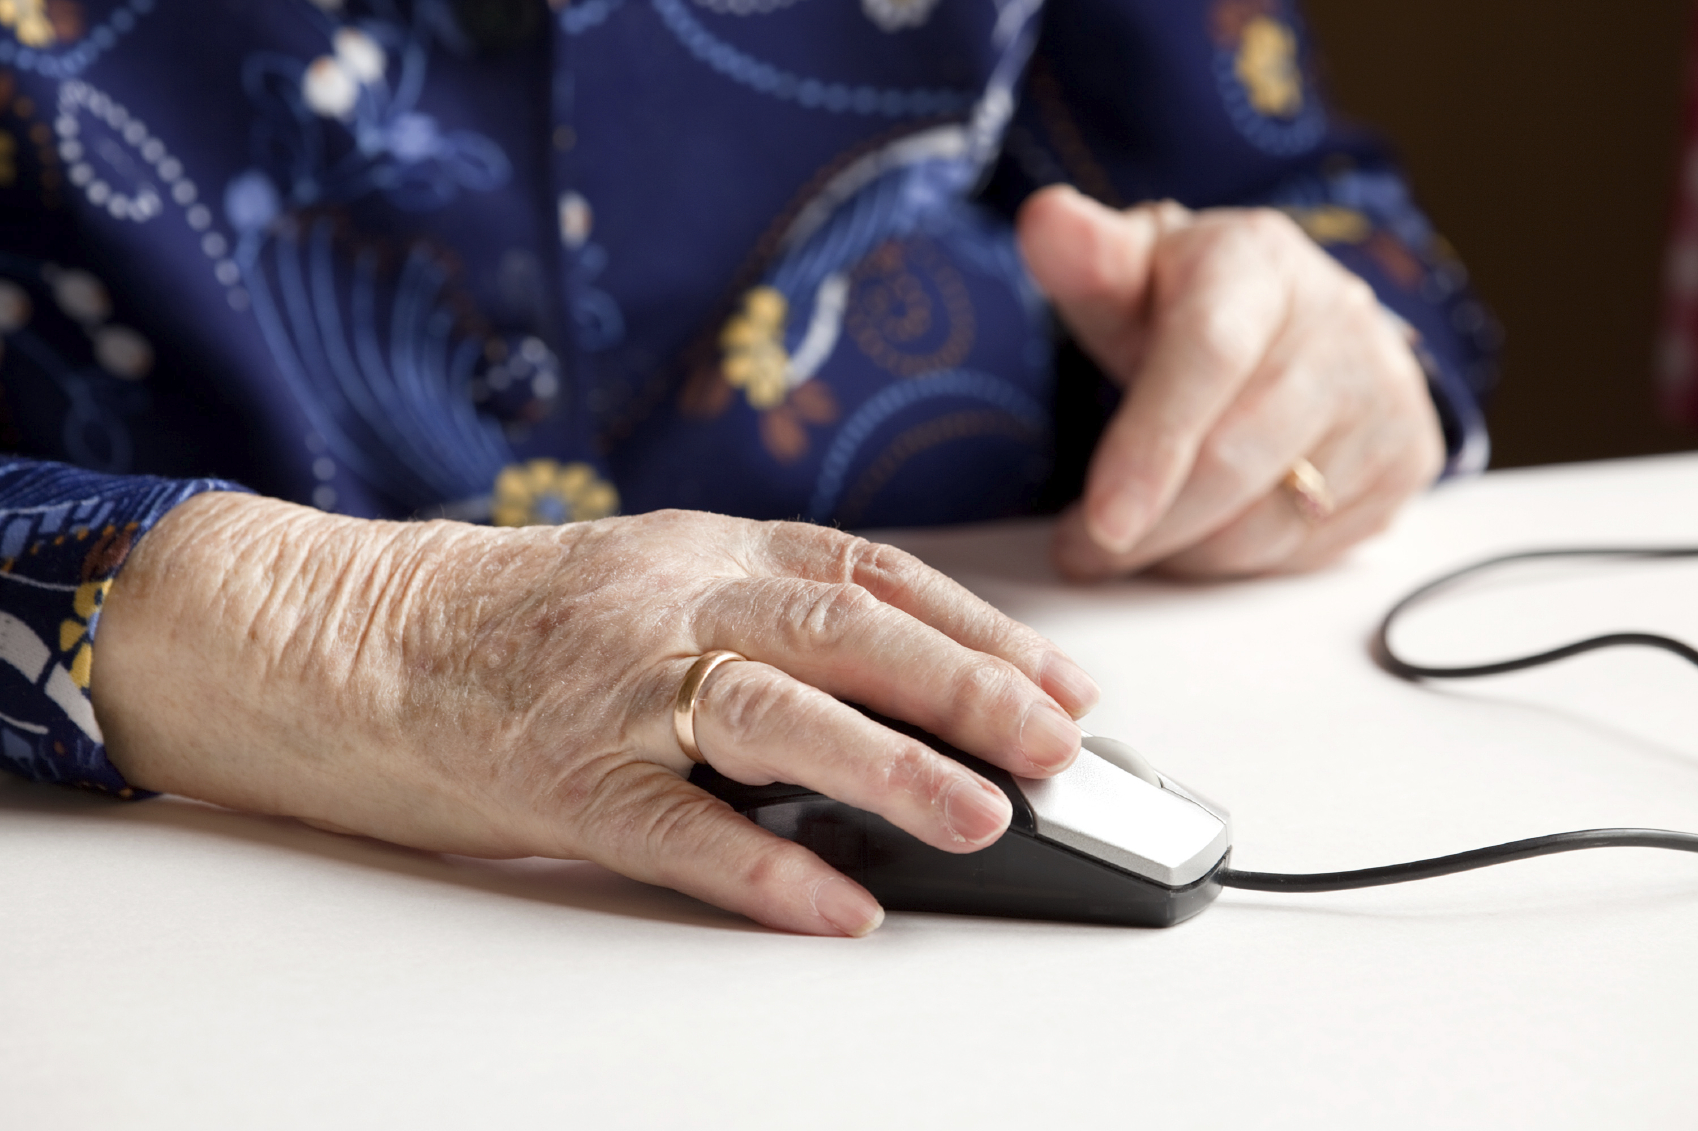 Restez connectés! Les proches aidants de personnes atteintes de démence peuvent bénéficier d’assistance en ligne et par téléphone